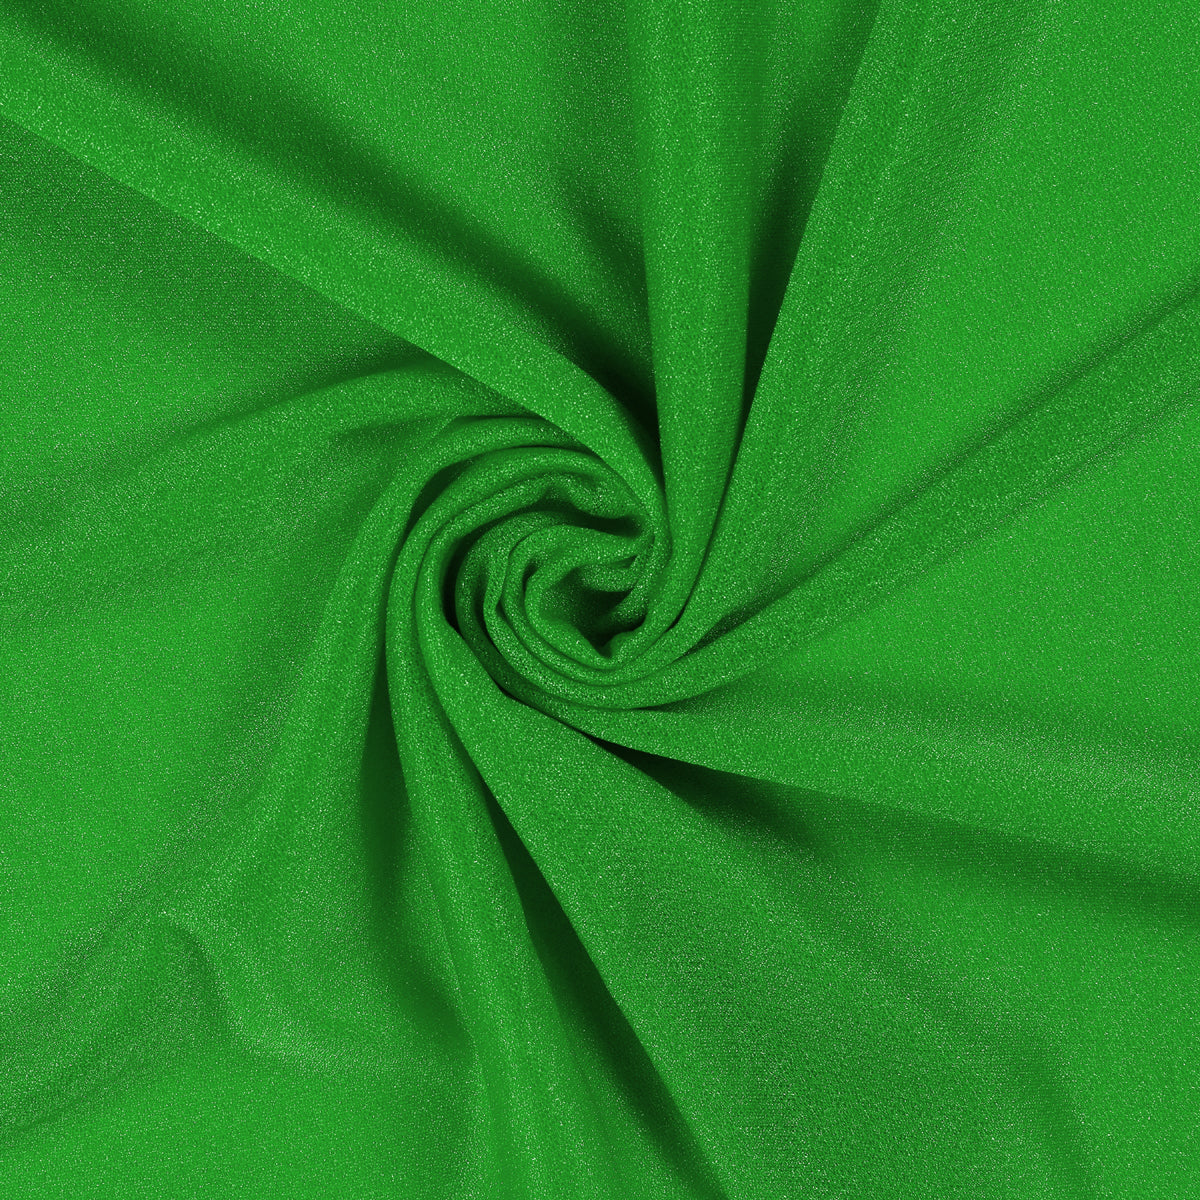 Green,b13db334-c3fe-46d6-b4bc-676eb35bb0f8